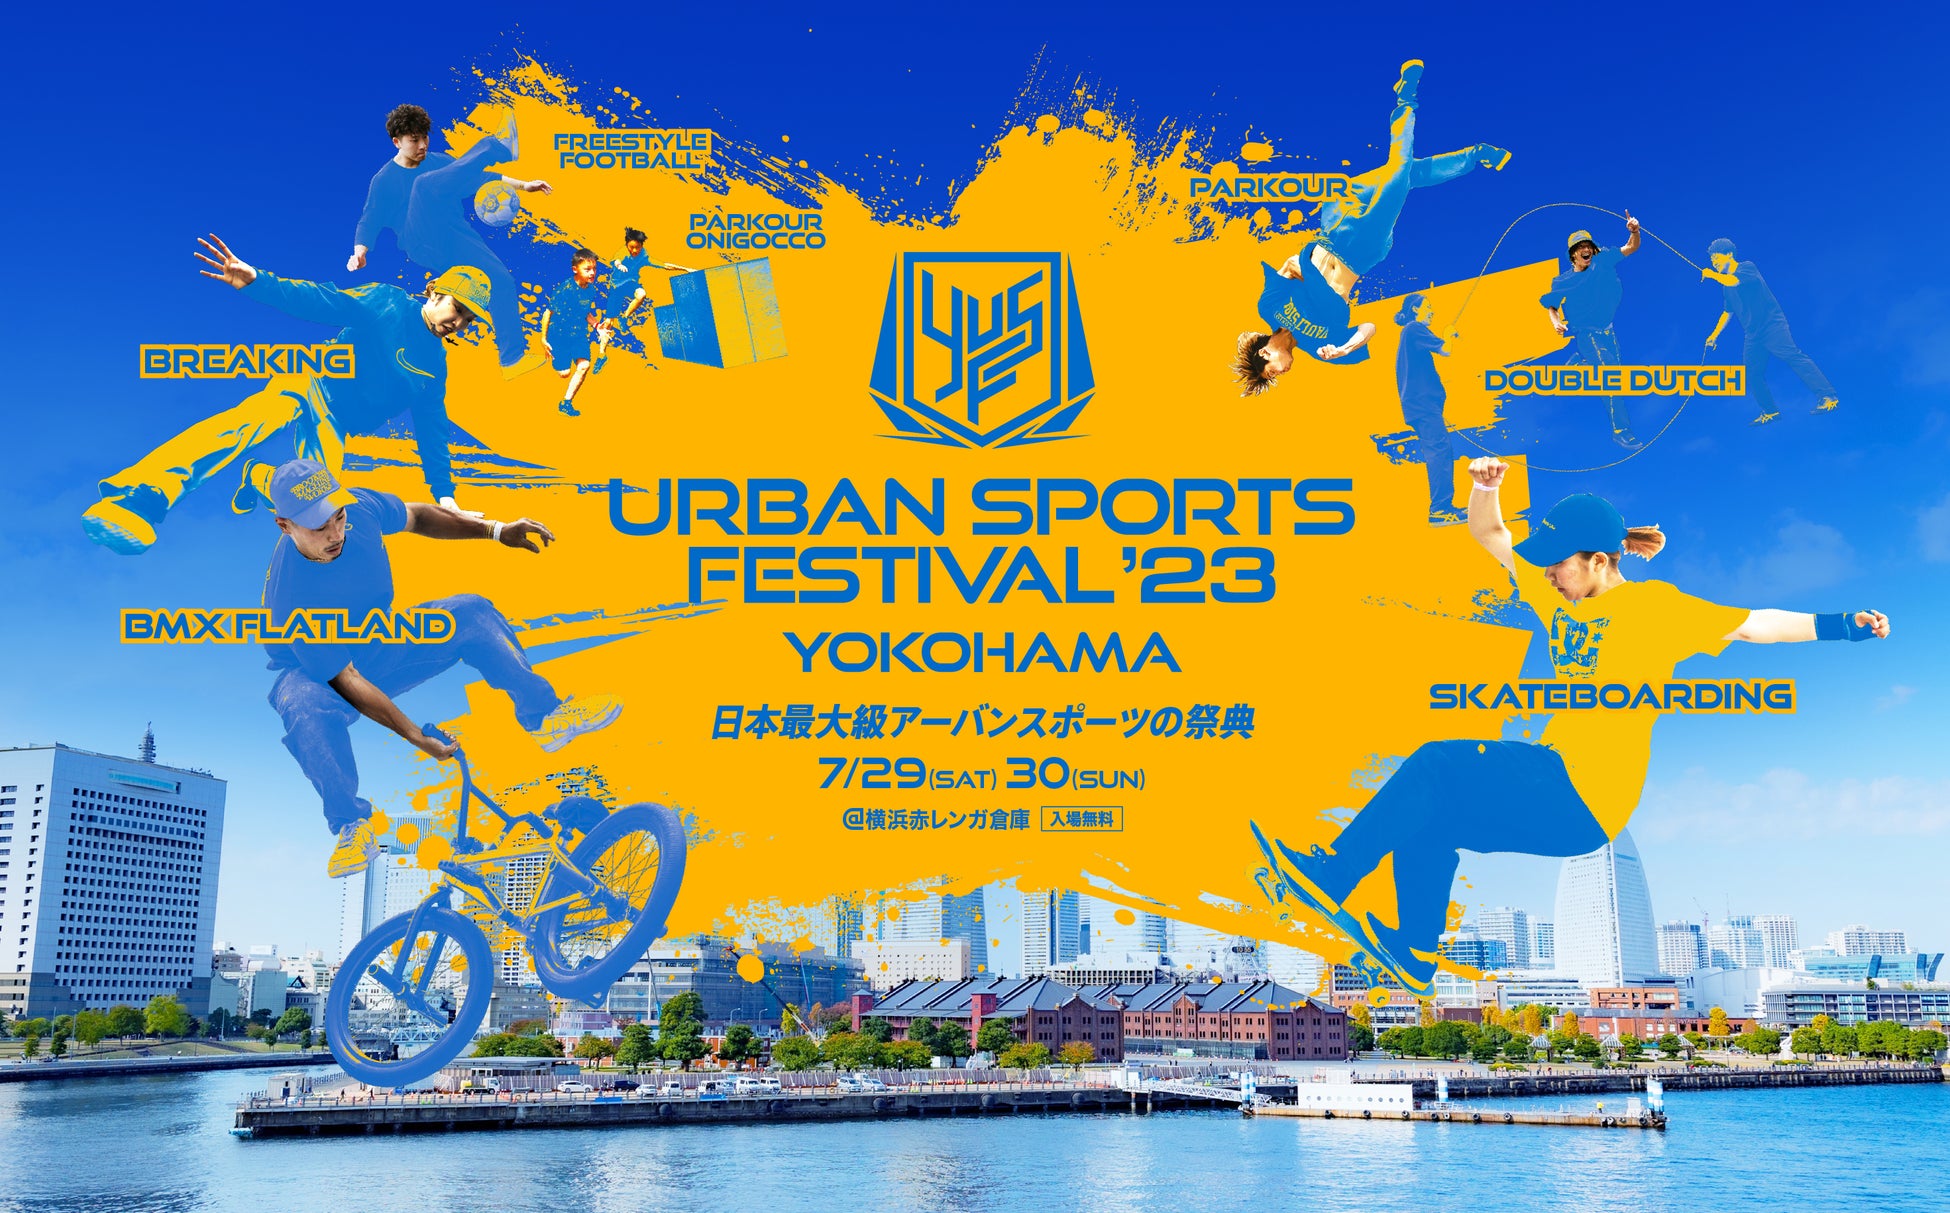 日本最大級“入場無料”のアーバンスポーツの祭典、今年は7月に開催決定！YOKOHAMA URBAN SPORTS FESTIVAL ‘23